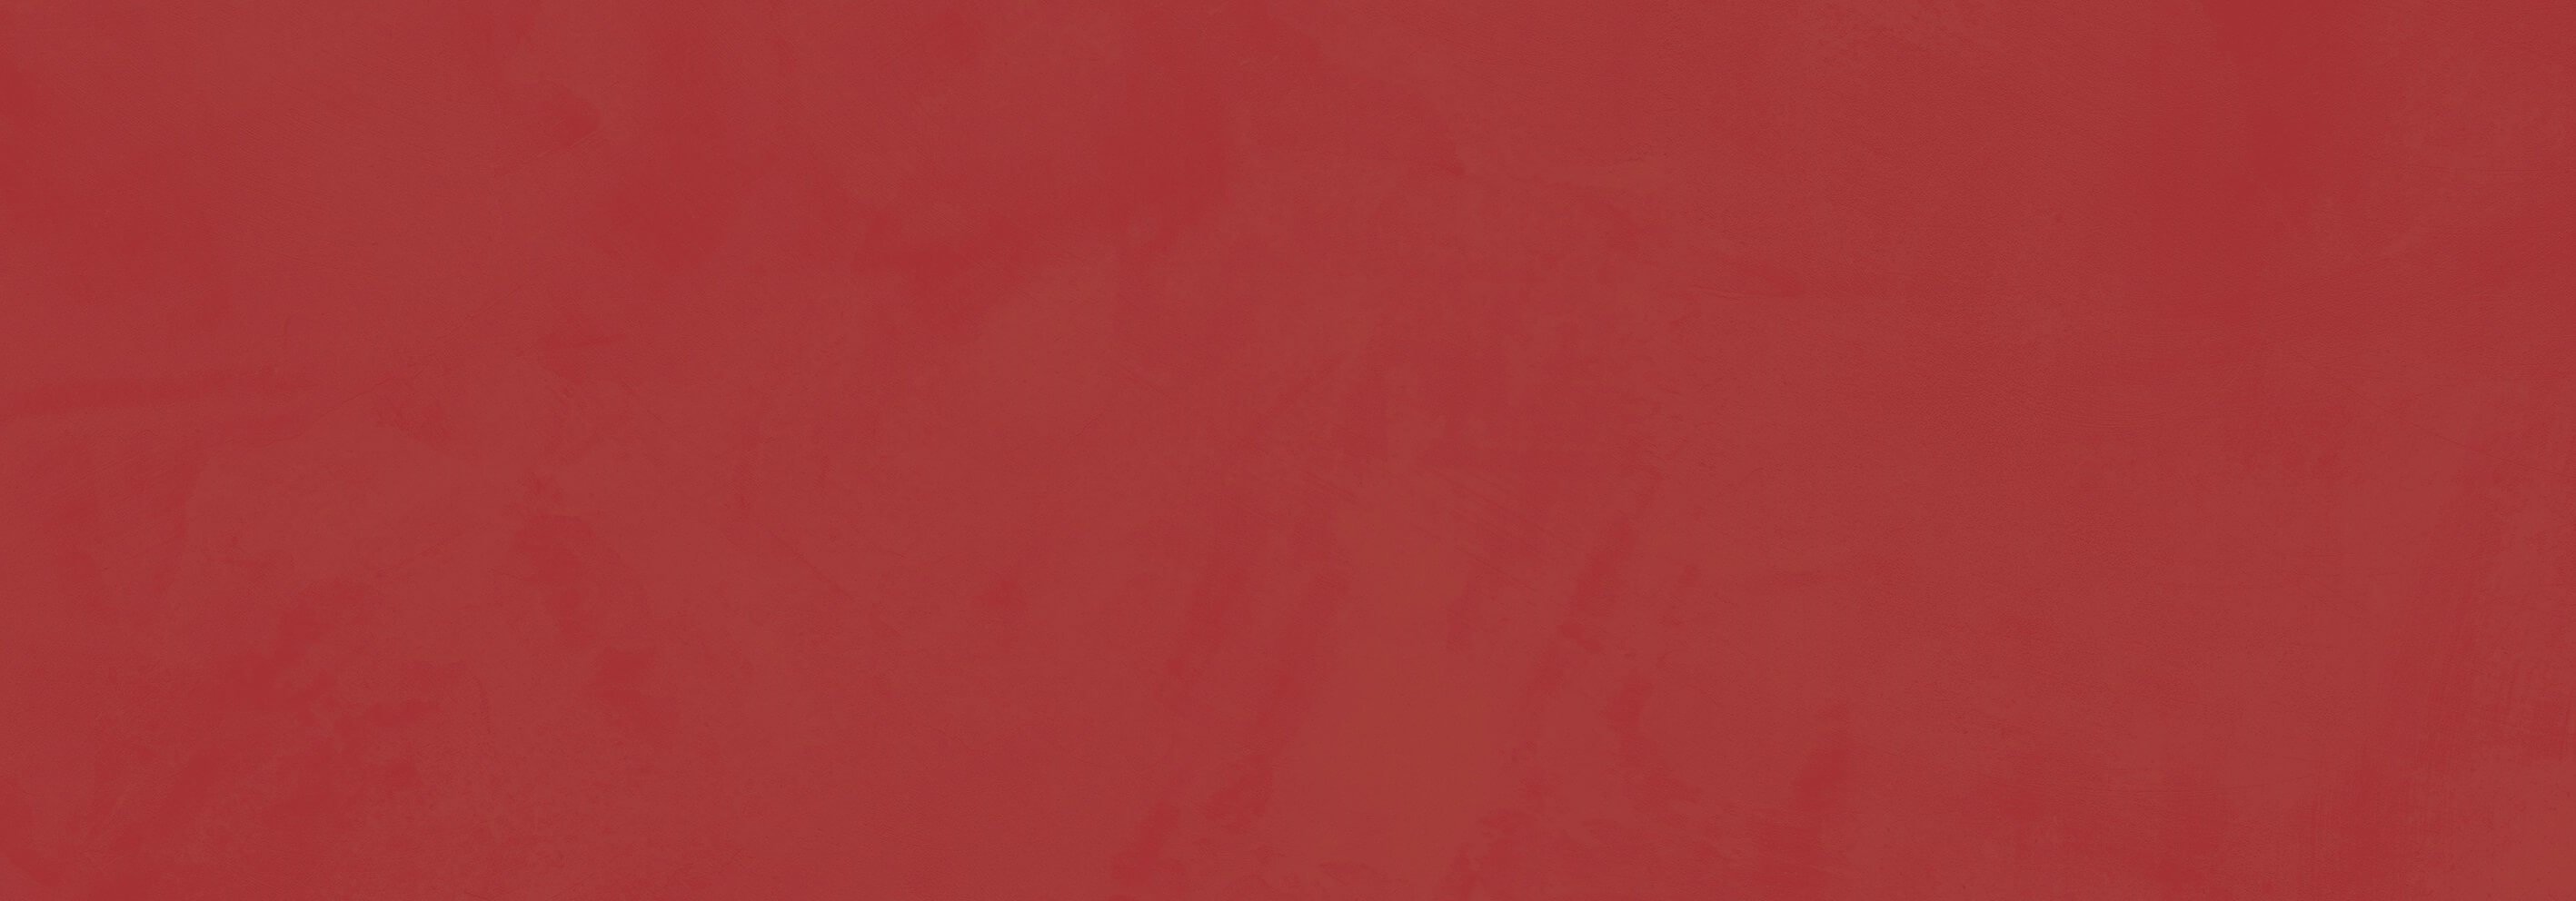 Керамическая плитка Love Tiles Splash Red, цвет красный, поверхность матовая, прямоугольник, 200x600